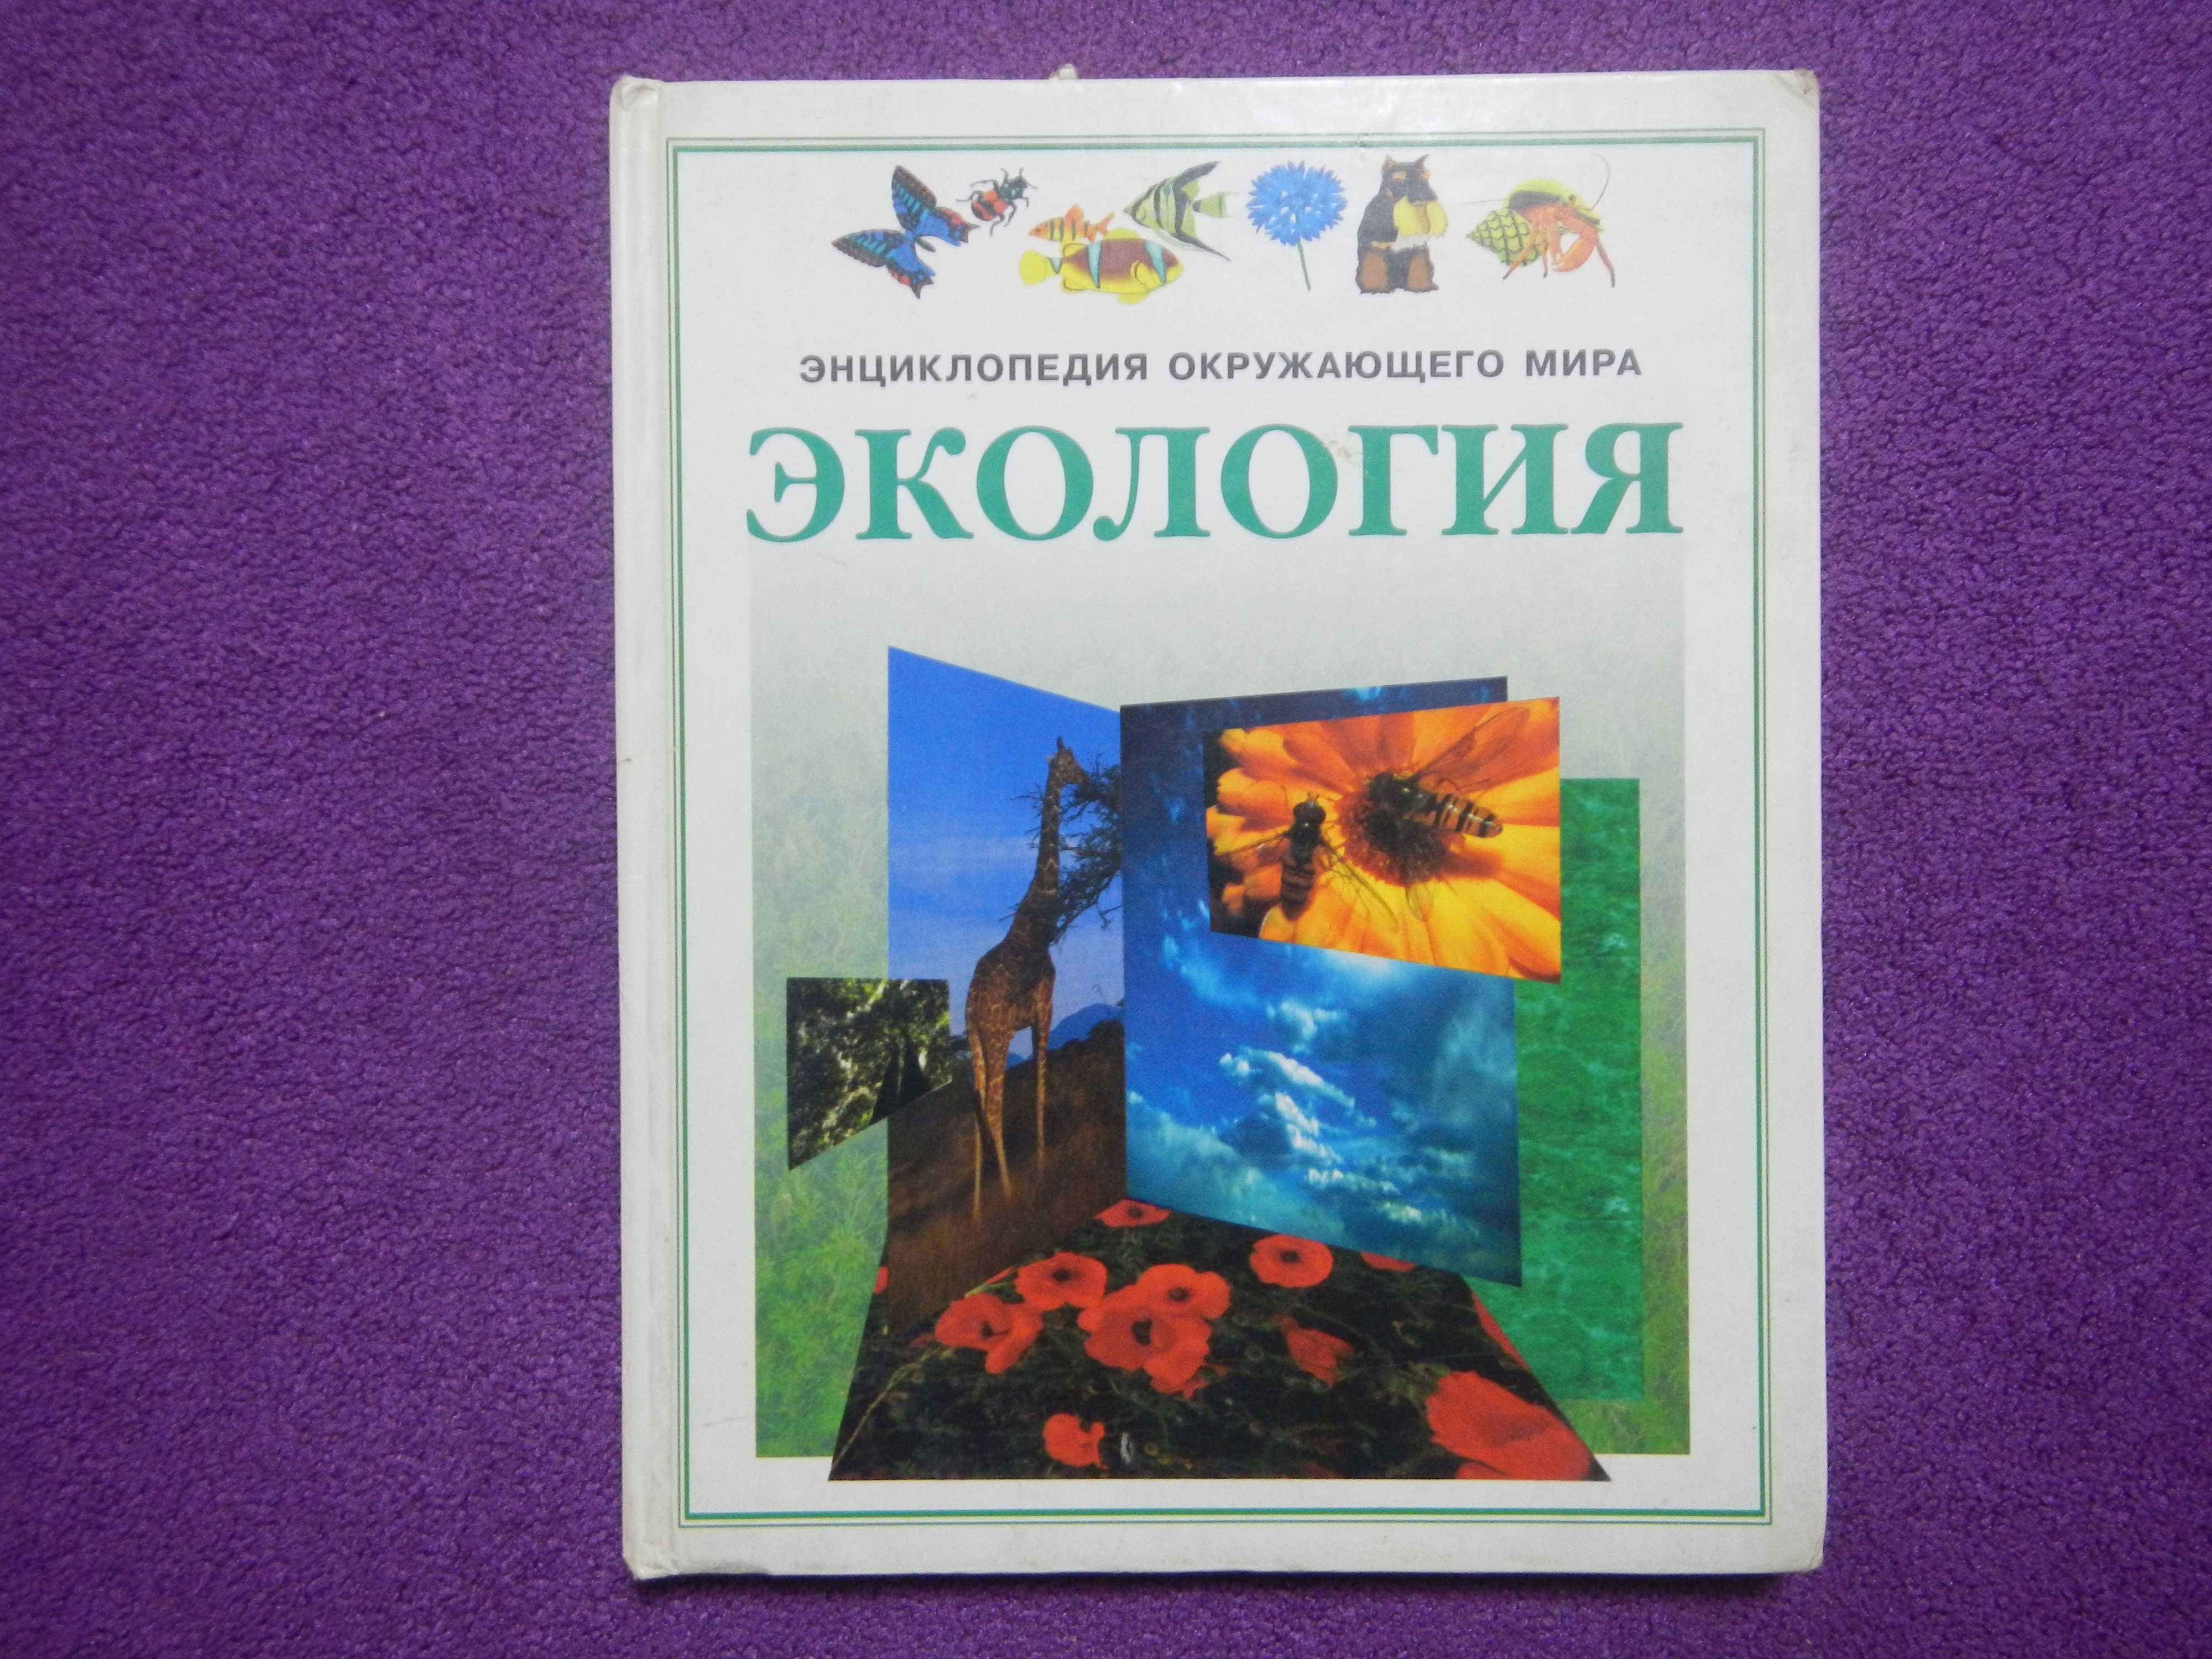 Энциклопедия окружающего мира - Экология - 1997